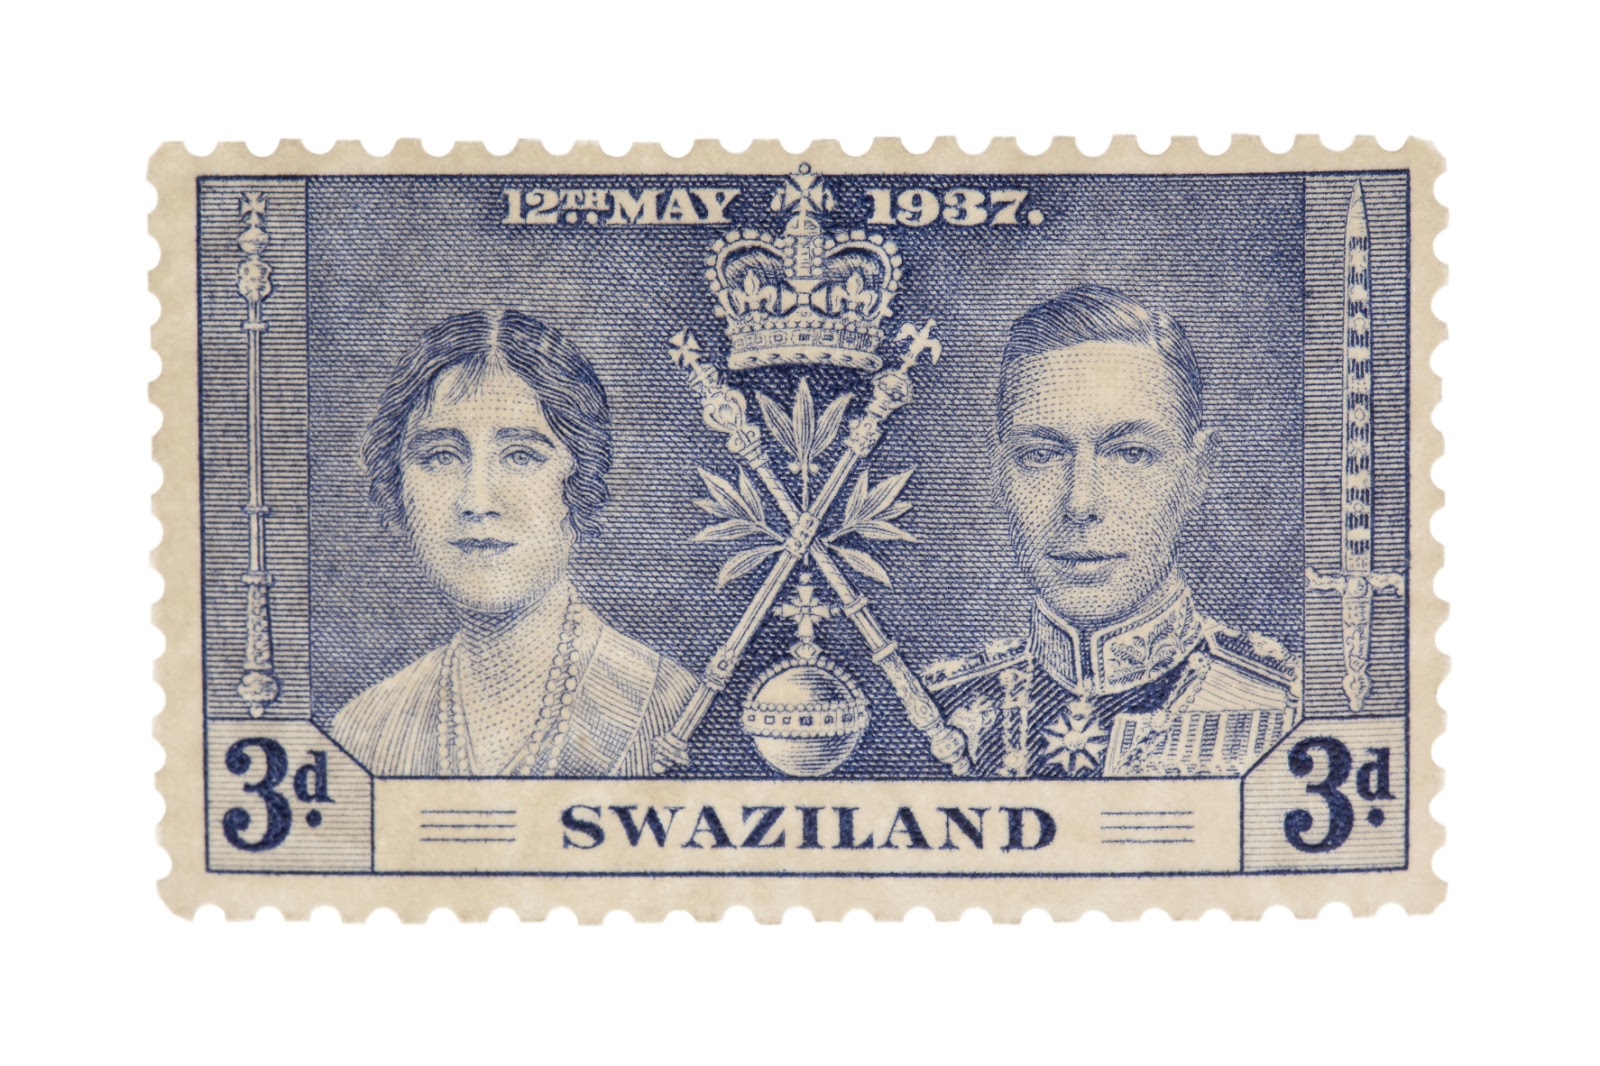 Kozzi-swaziland_stamp-1774x1183.jpg